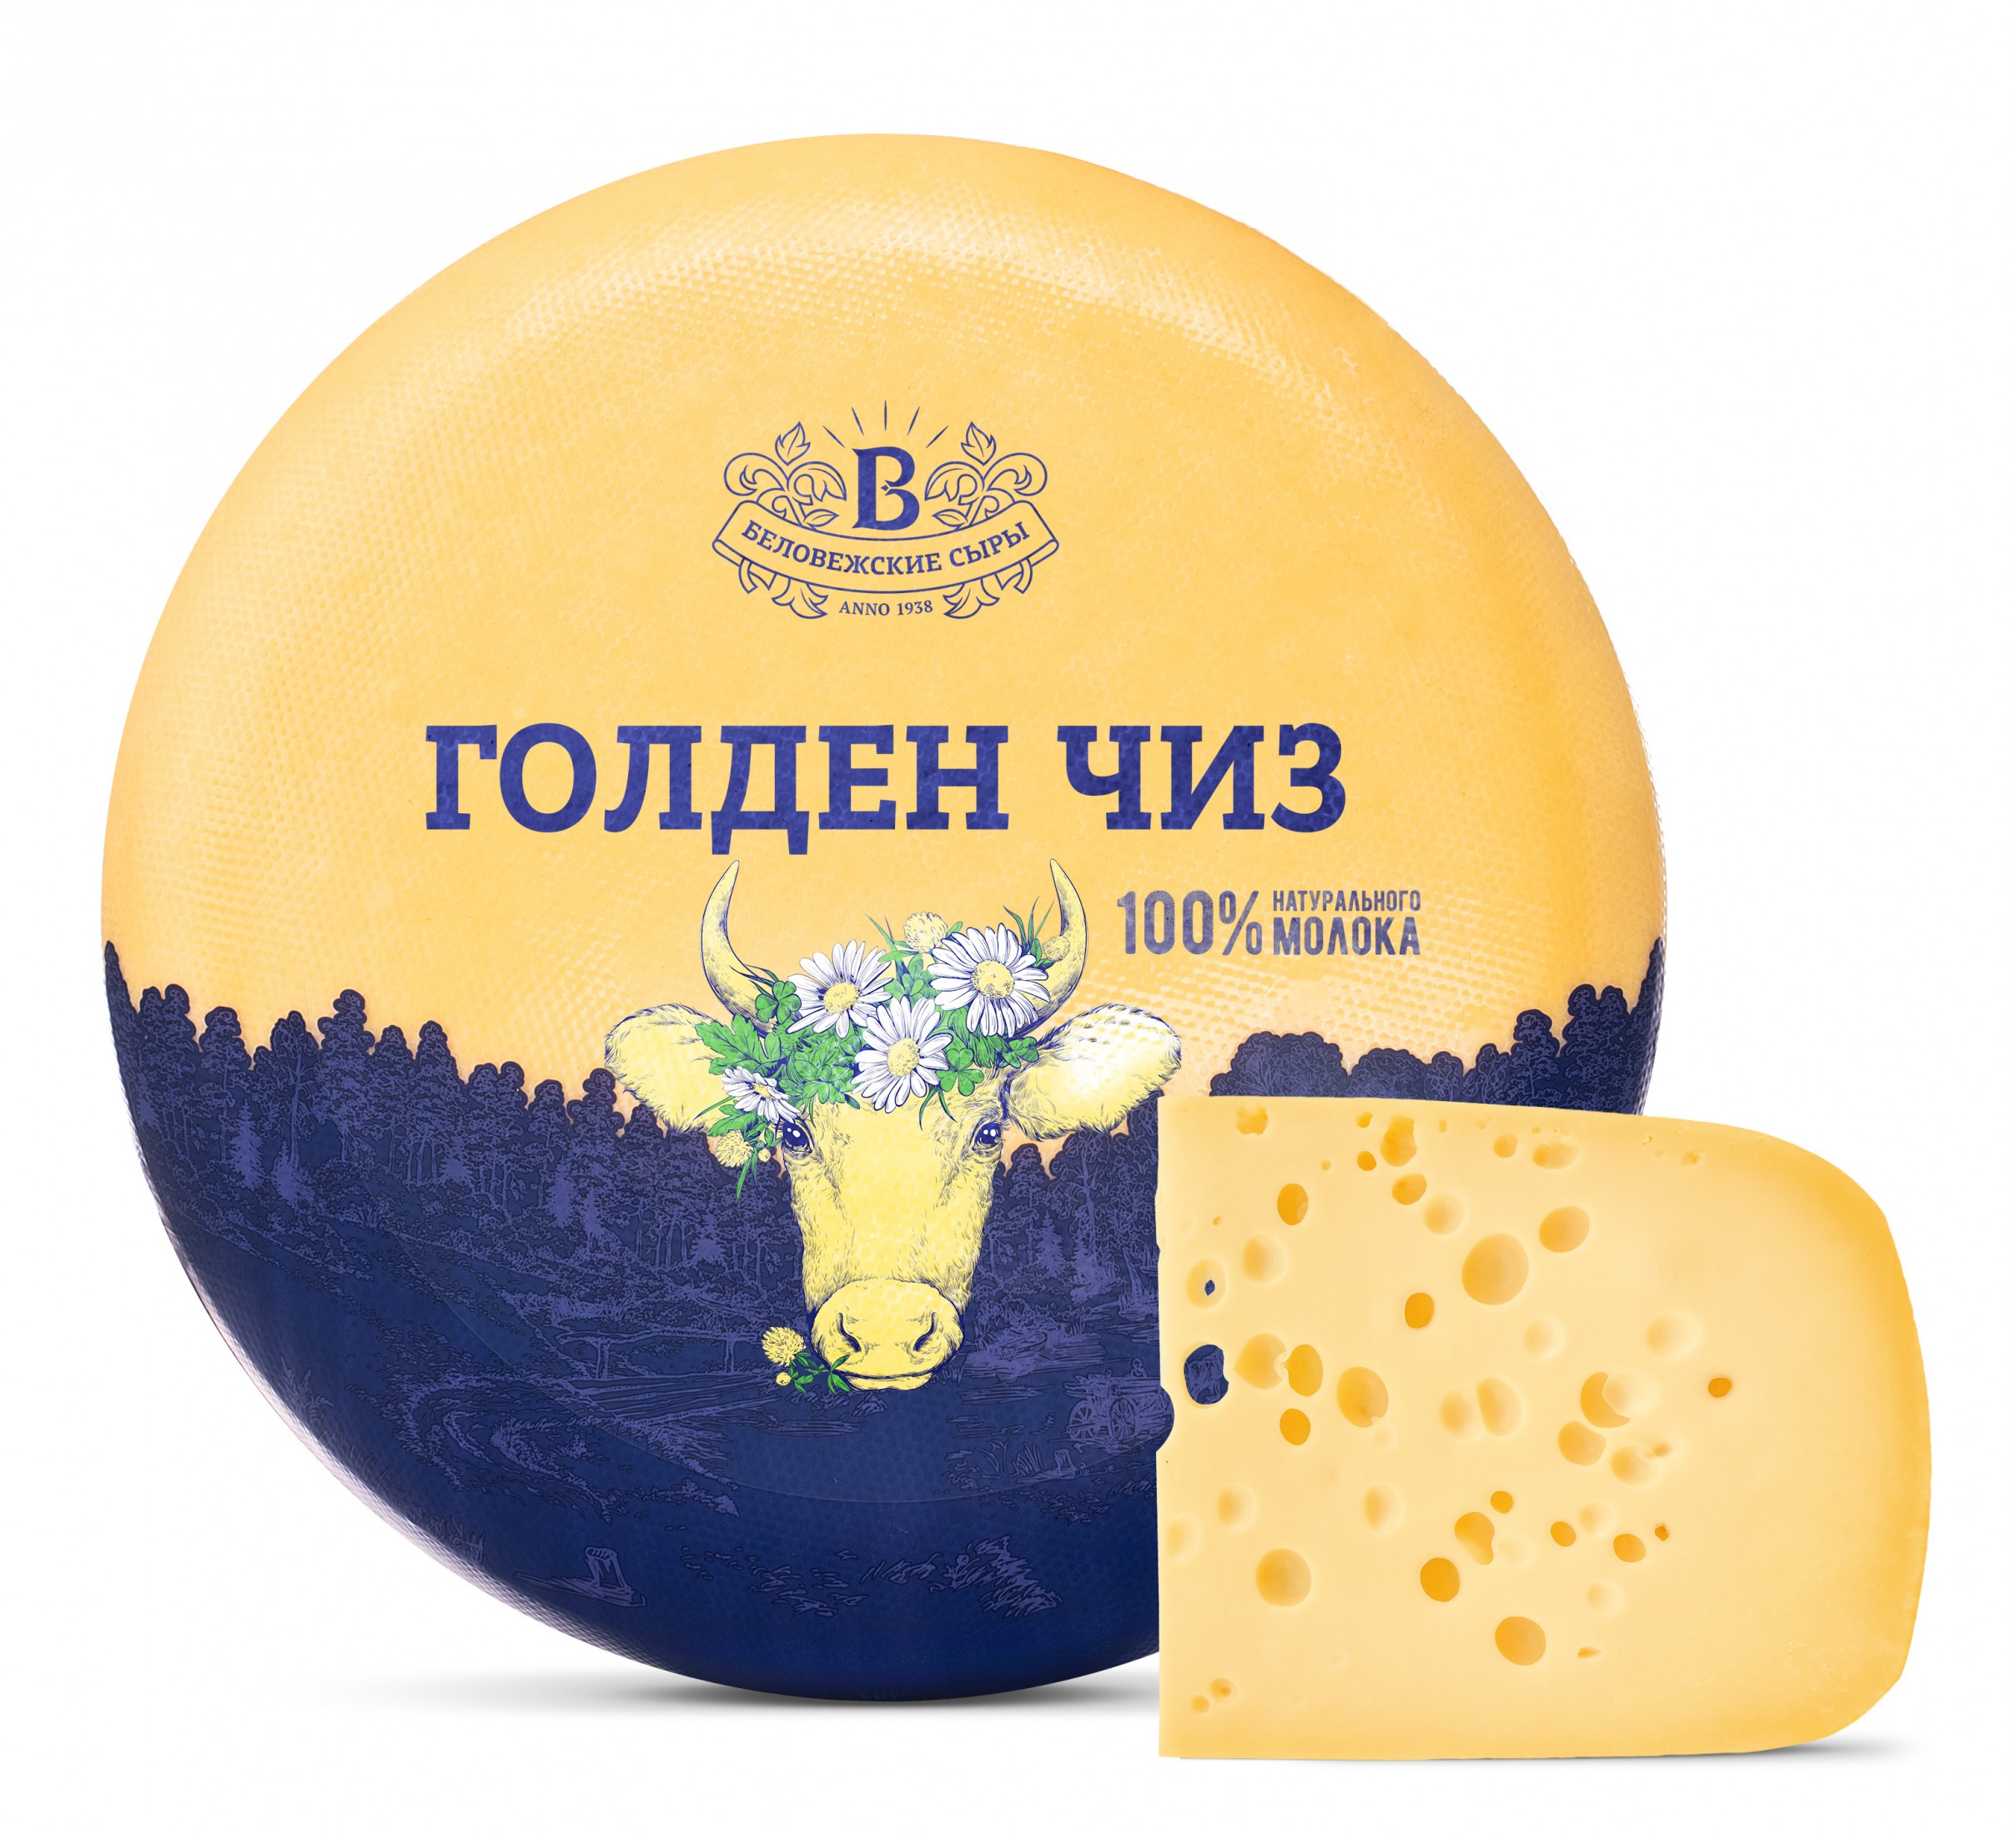 Сыр "Голден чиз"  | Интернет-магазин Gostpp